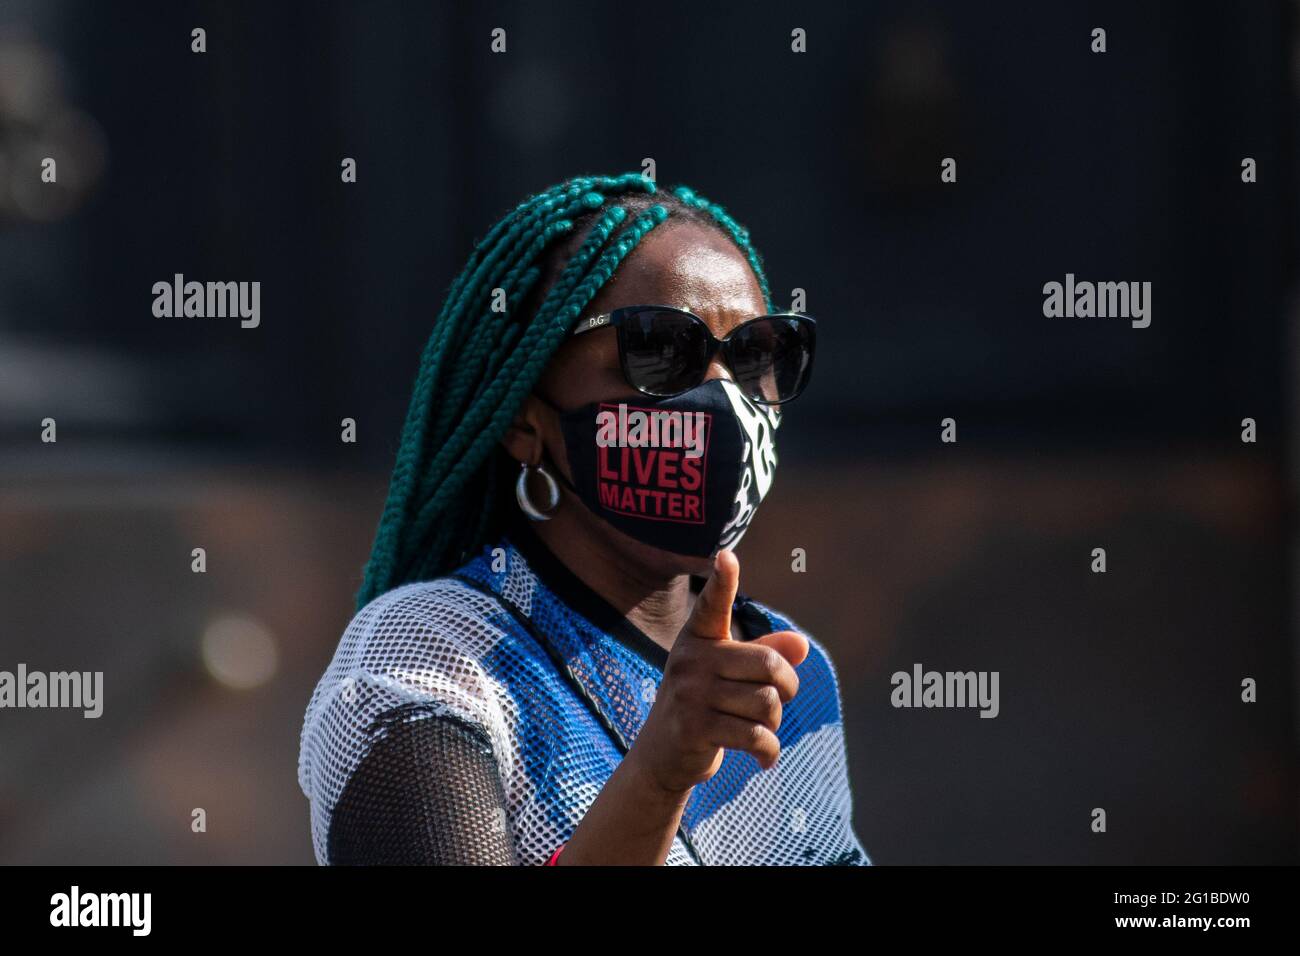 Madrid, Spanien. Juni 2021. Eine Frau, die eine Maske mit der Black Lives Matter-Botschaft trug, während eines Protestes gegen Rassismus als Teil der sozialen Bewegung Black Lives Matter im Zusammenhang mit dem Tod des afroamerikanischen Bürgers George Floyd in den Vereinigten Staaten. Quelle: Marcos del Mazo/Alamy Live News Stockfoto